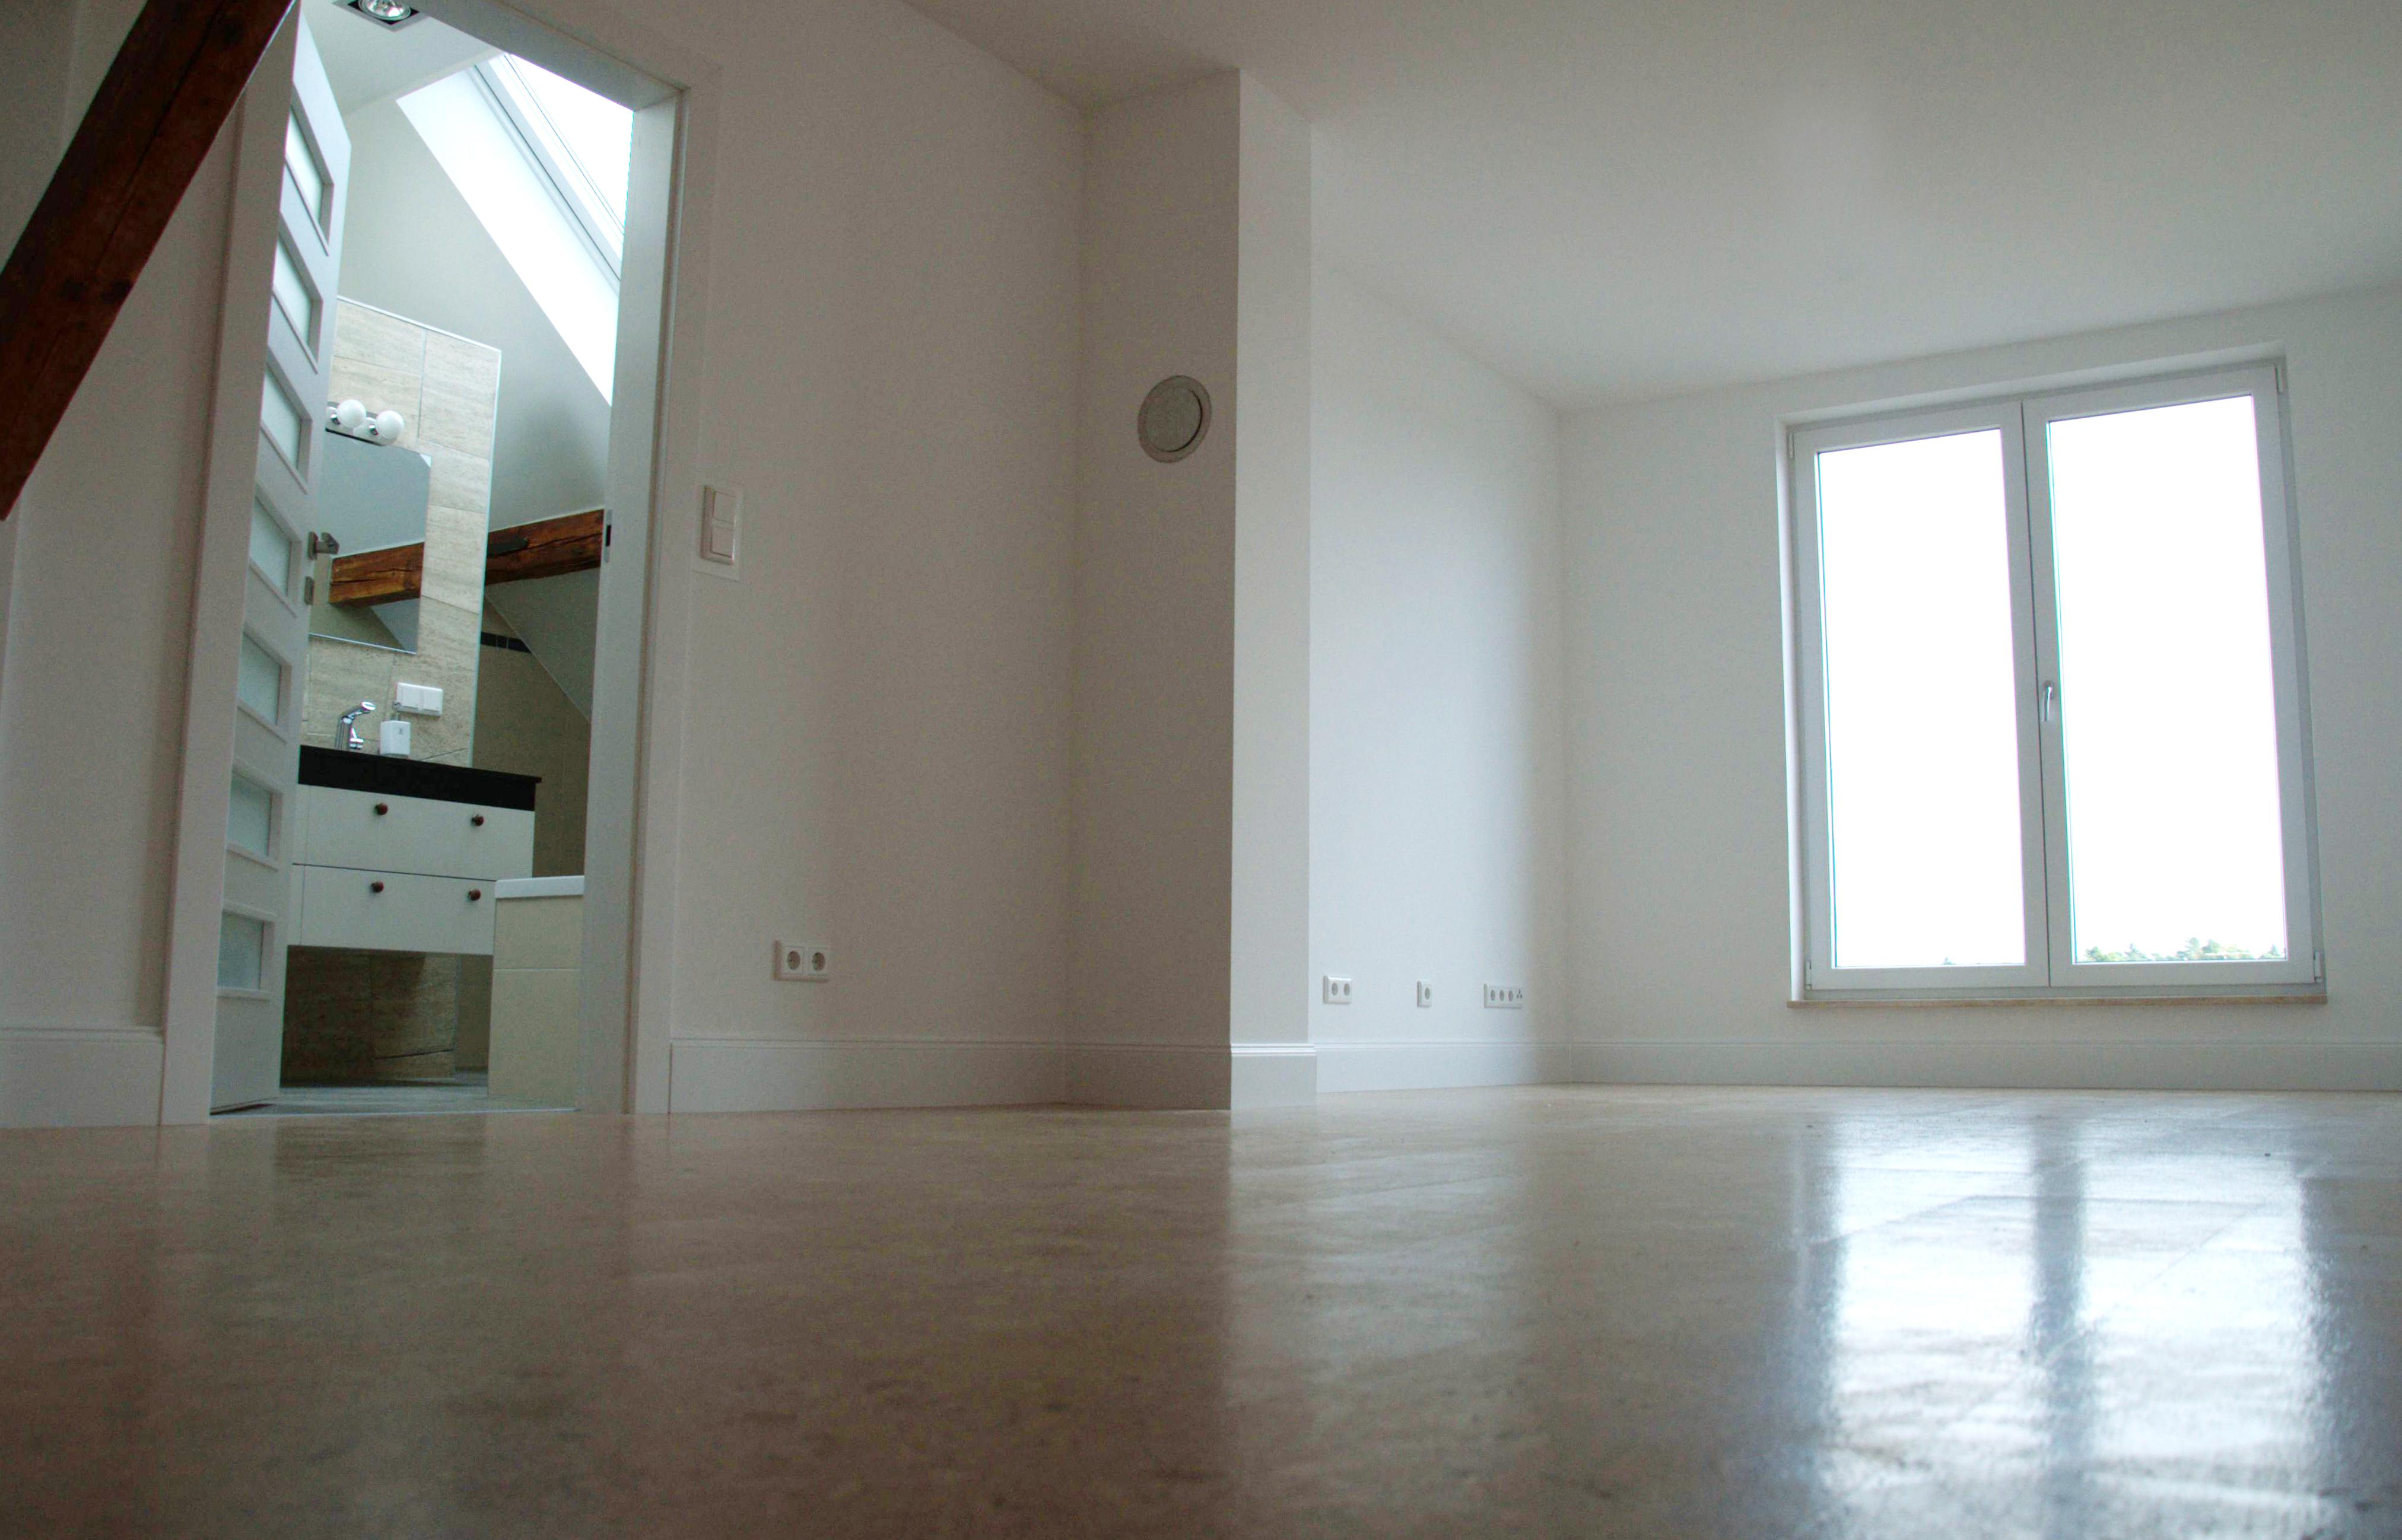 Schlafzimmer im Wohlfühl Fabrik Loft 210qm zu mieten #holzbalken ©Tatjana Adelt